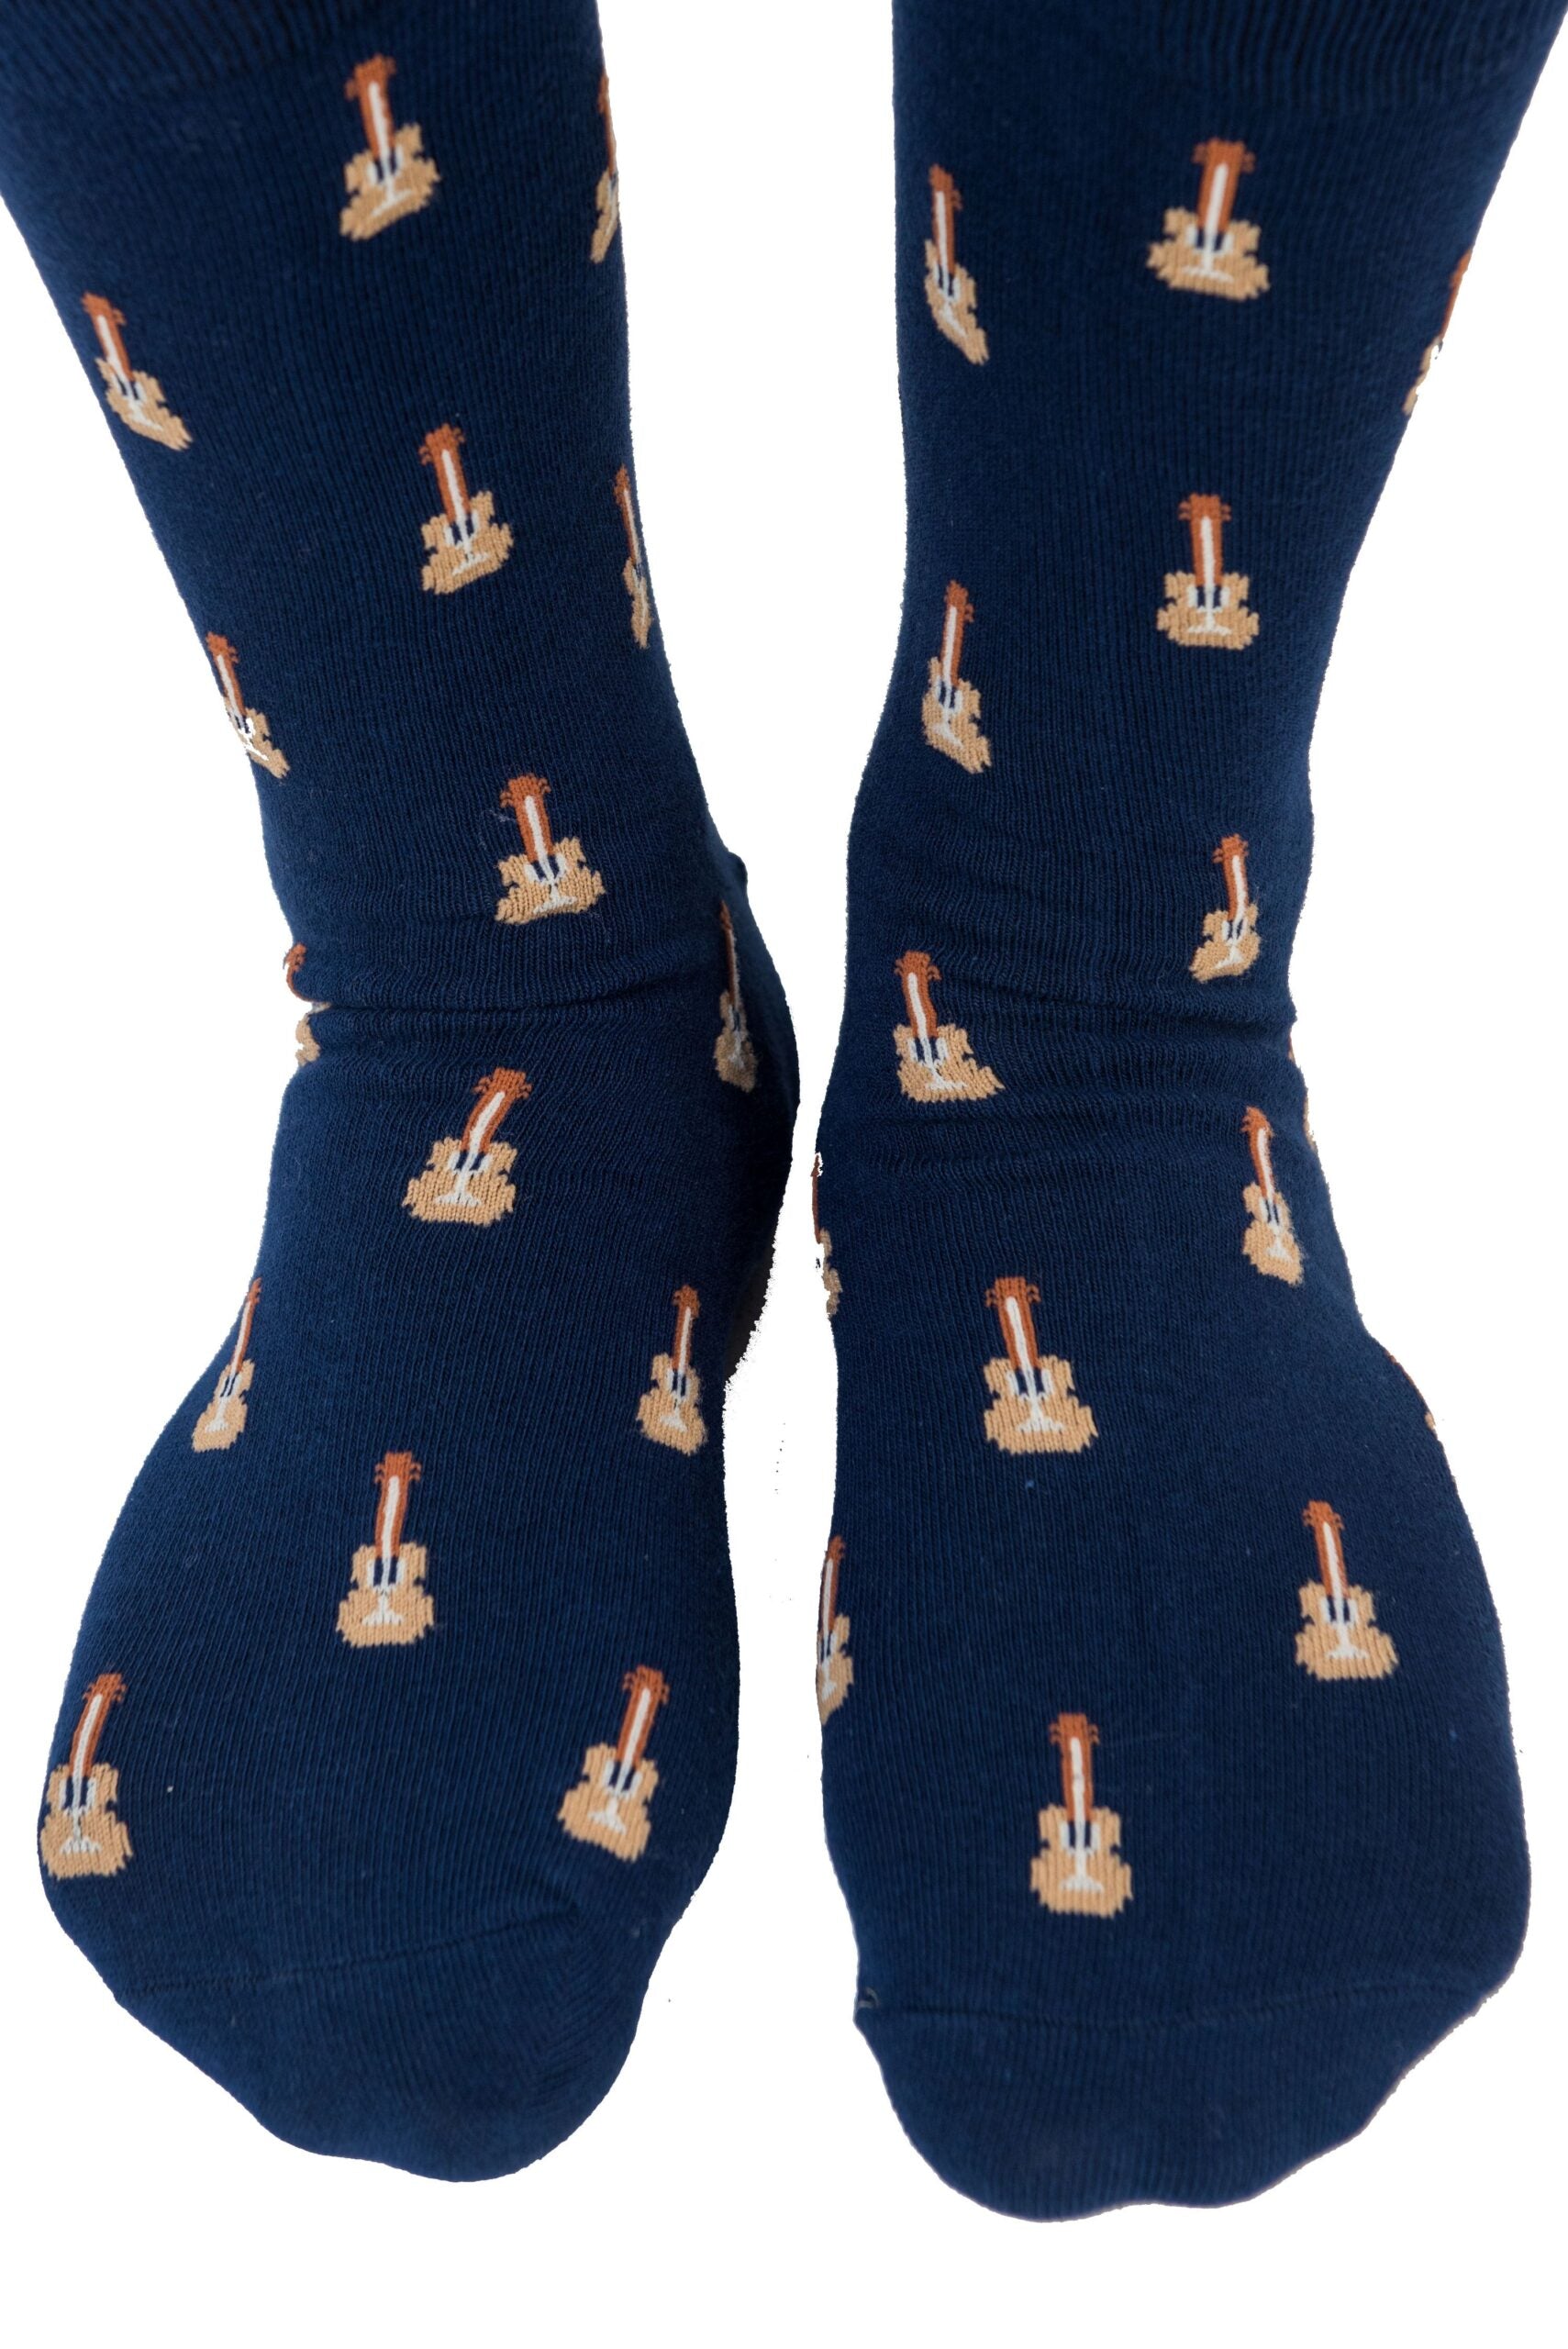 A pair of Guitar Socks for men.